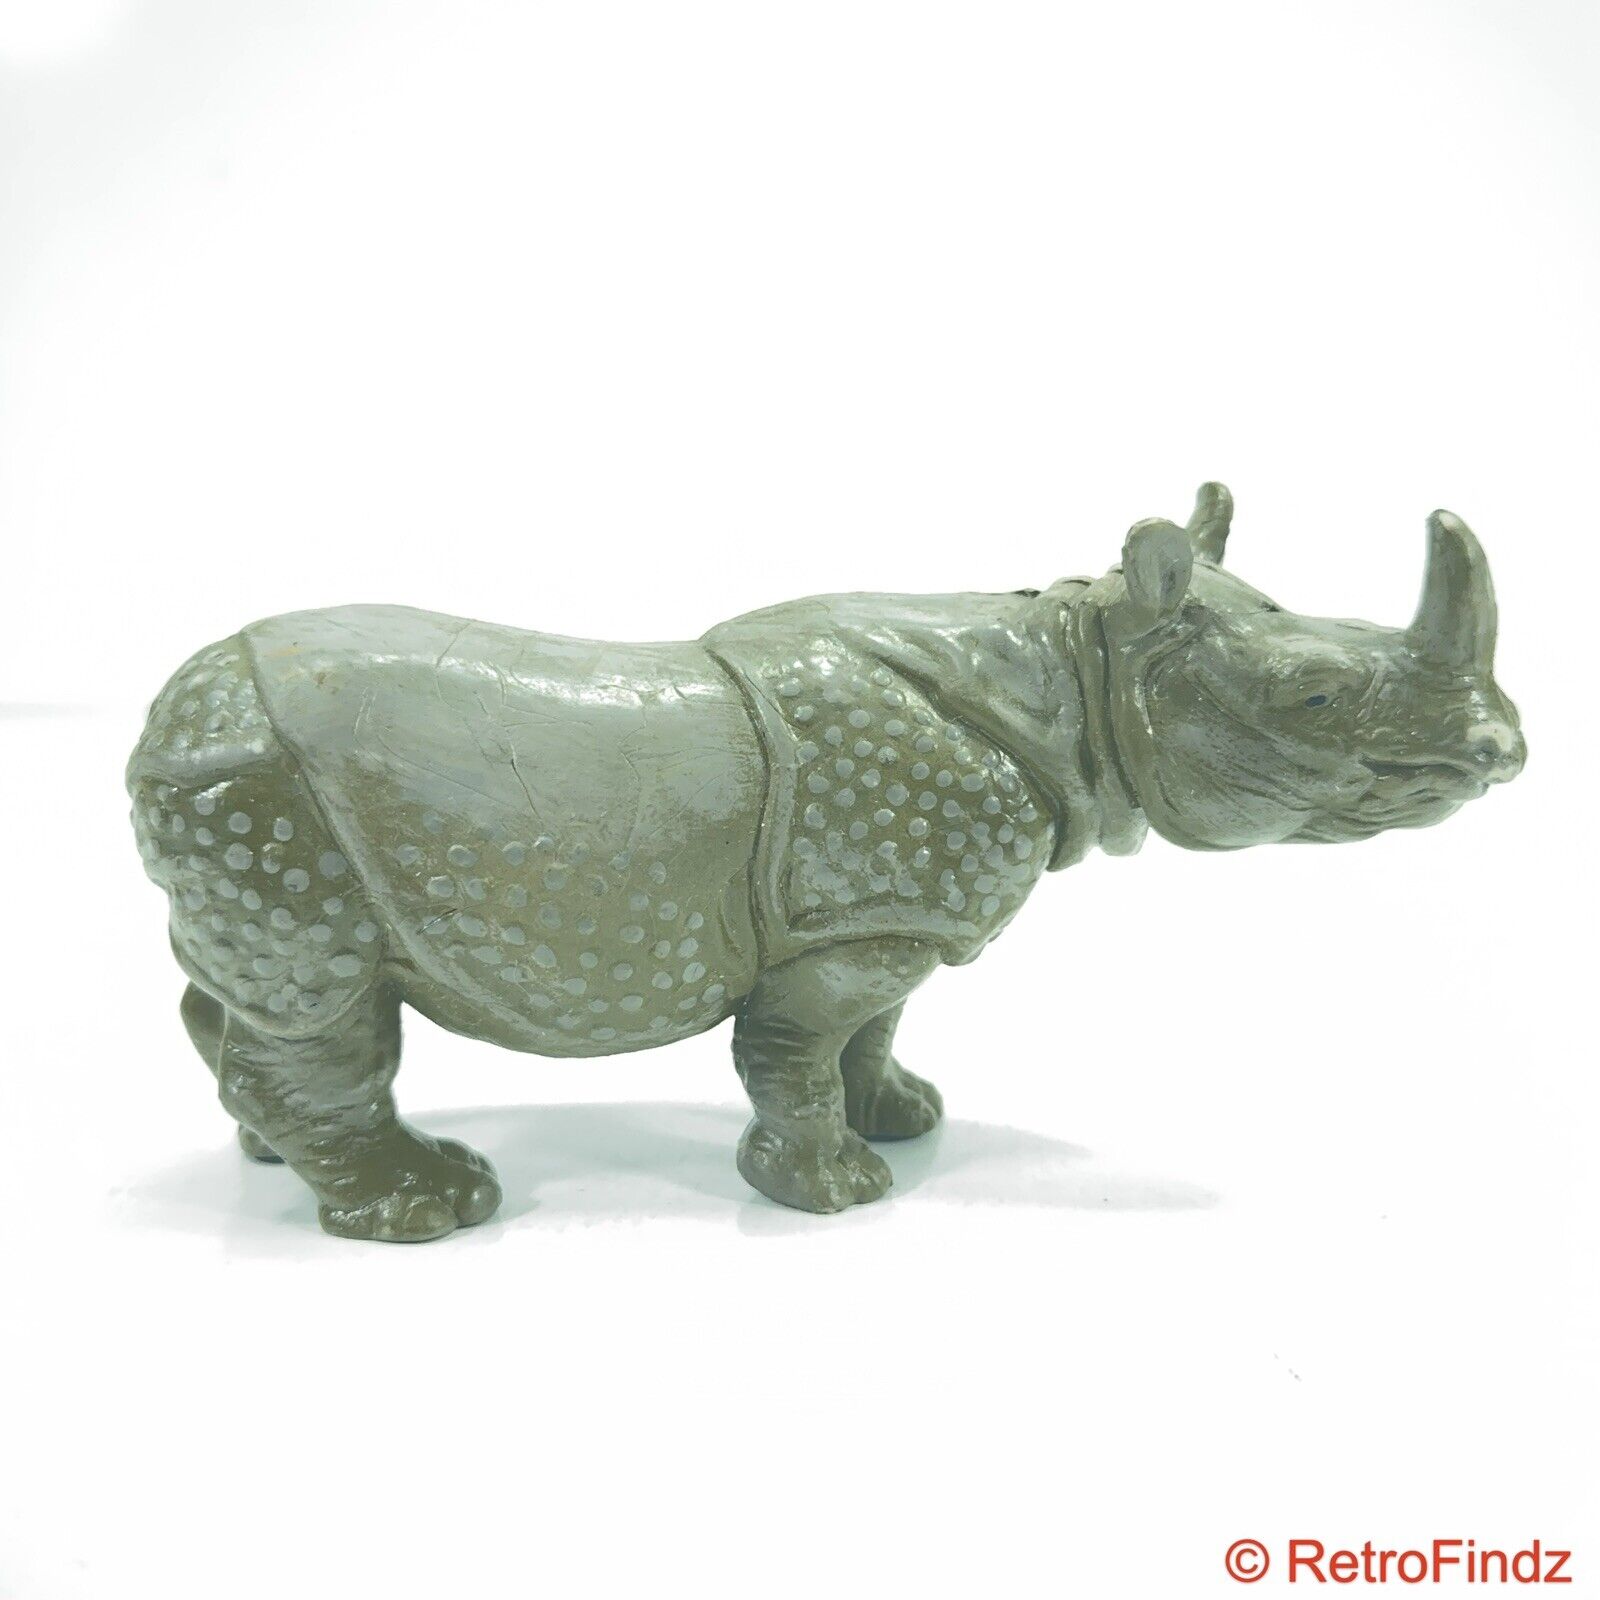 Schleich 14025 Rhinoceros Figure 4”, Wildlife, Wild Animals